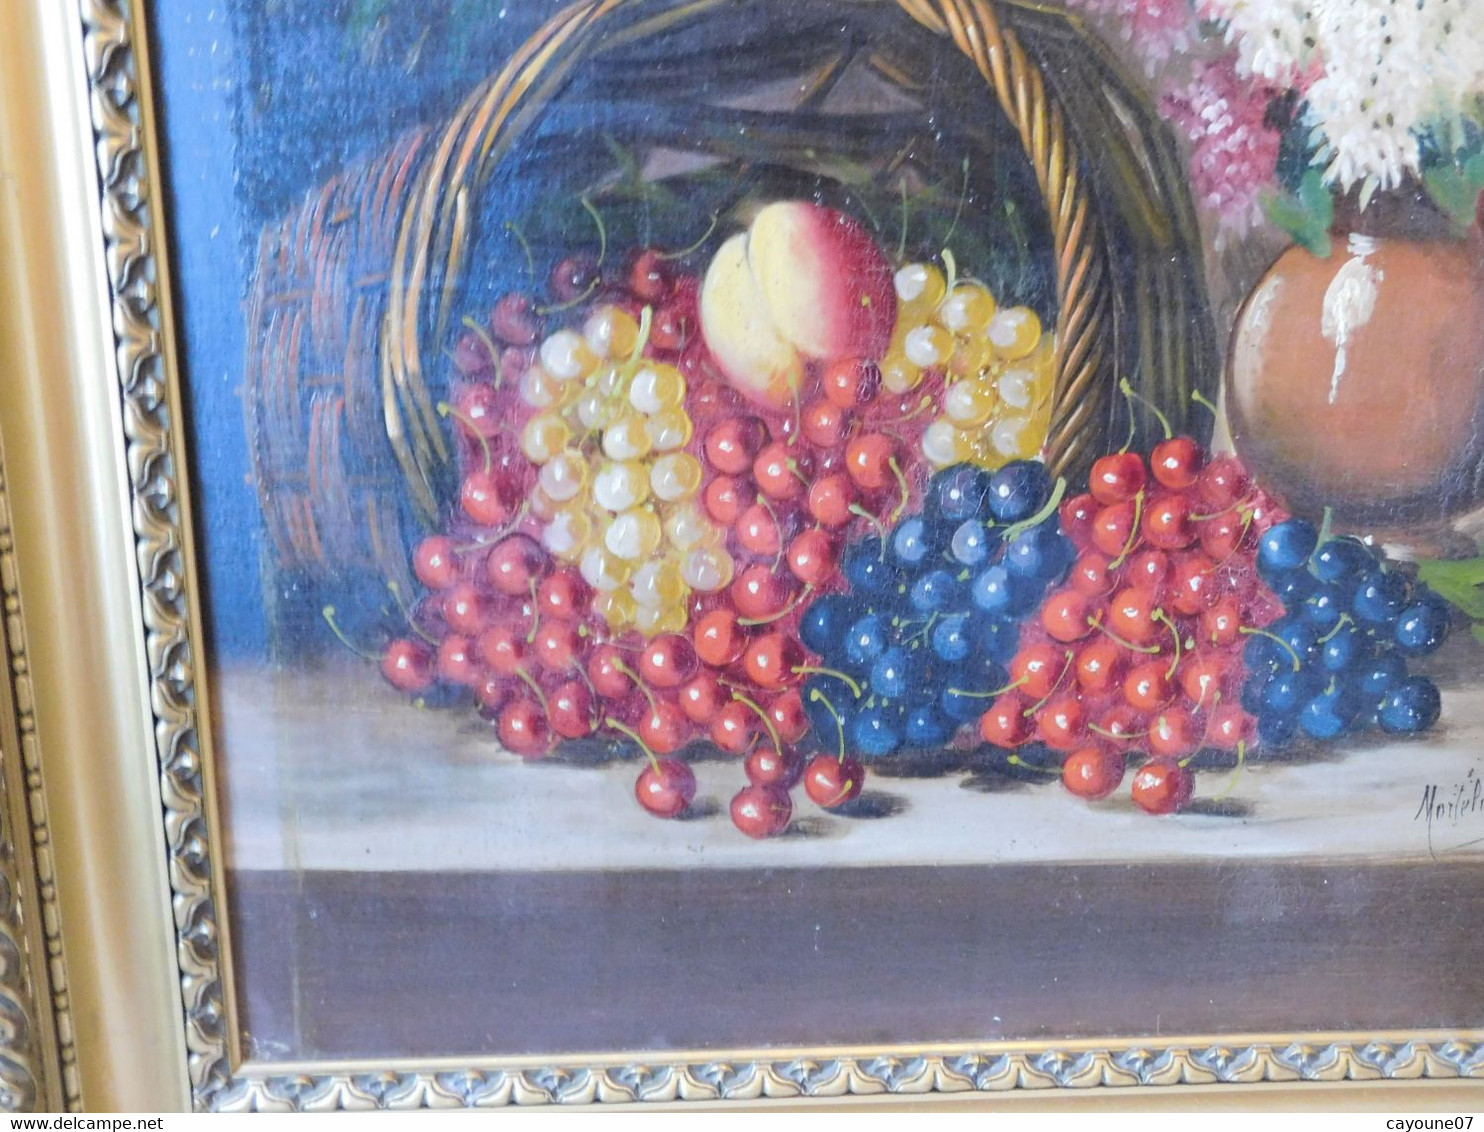 MORTELAZ (XIX-XXème) huile sur toile grand format nature morte aux raisins cerise pêche et bouquet fleuri